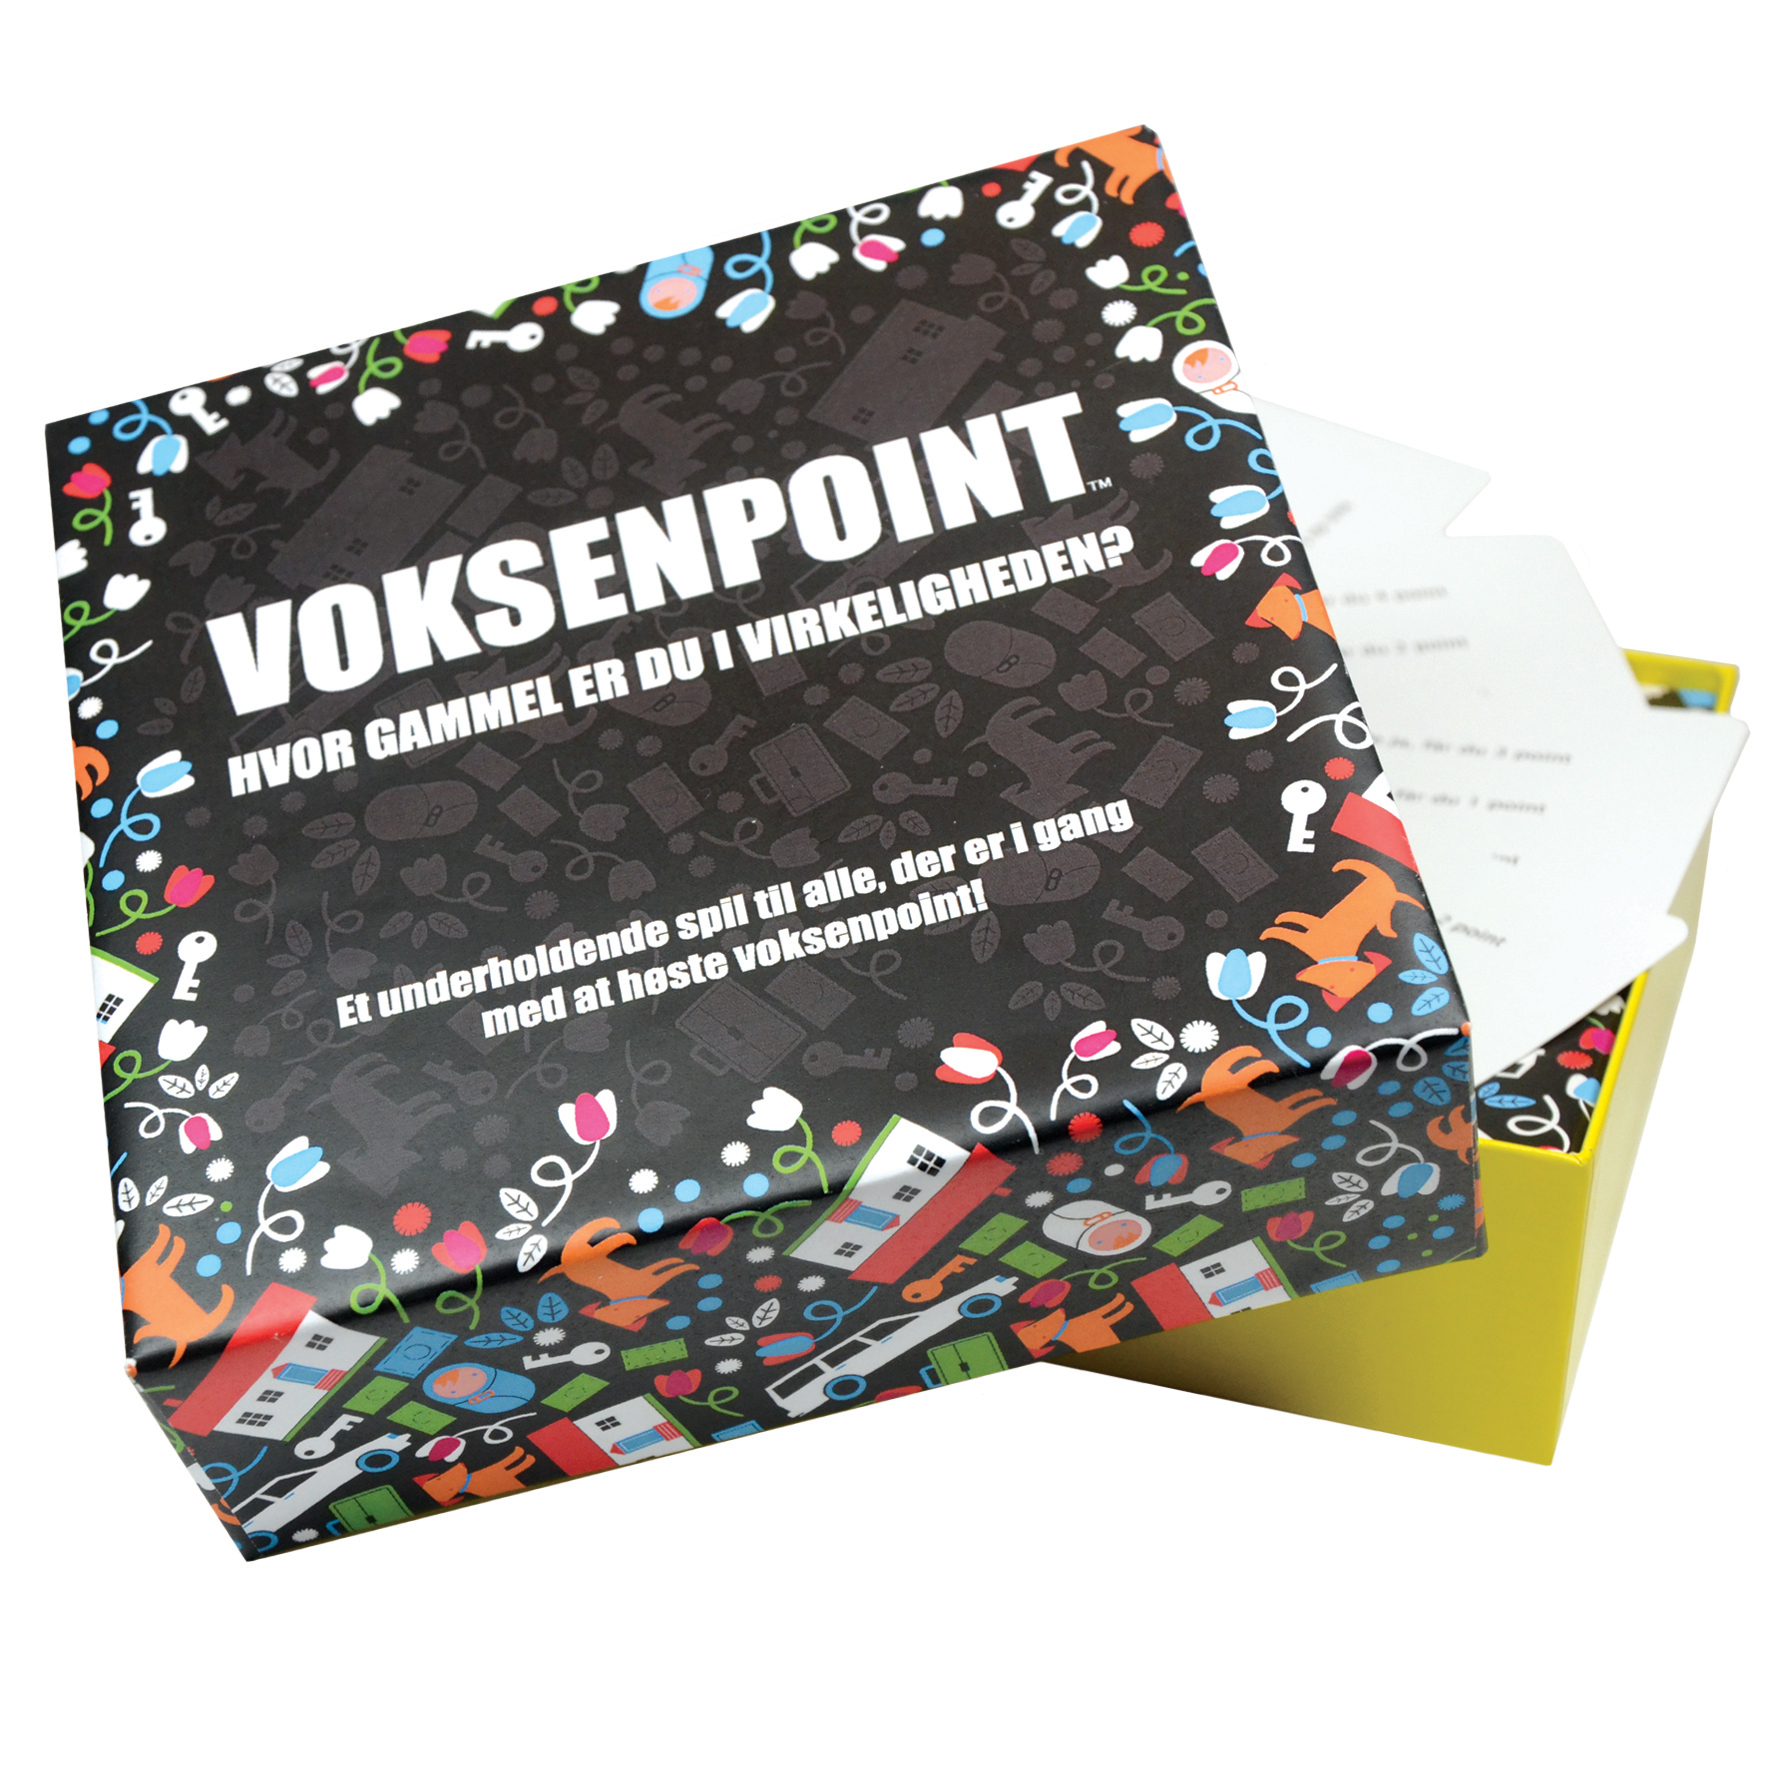 Køb Voksenpoint - Pris 151.00 kr.